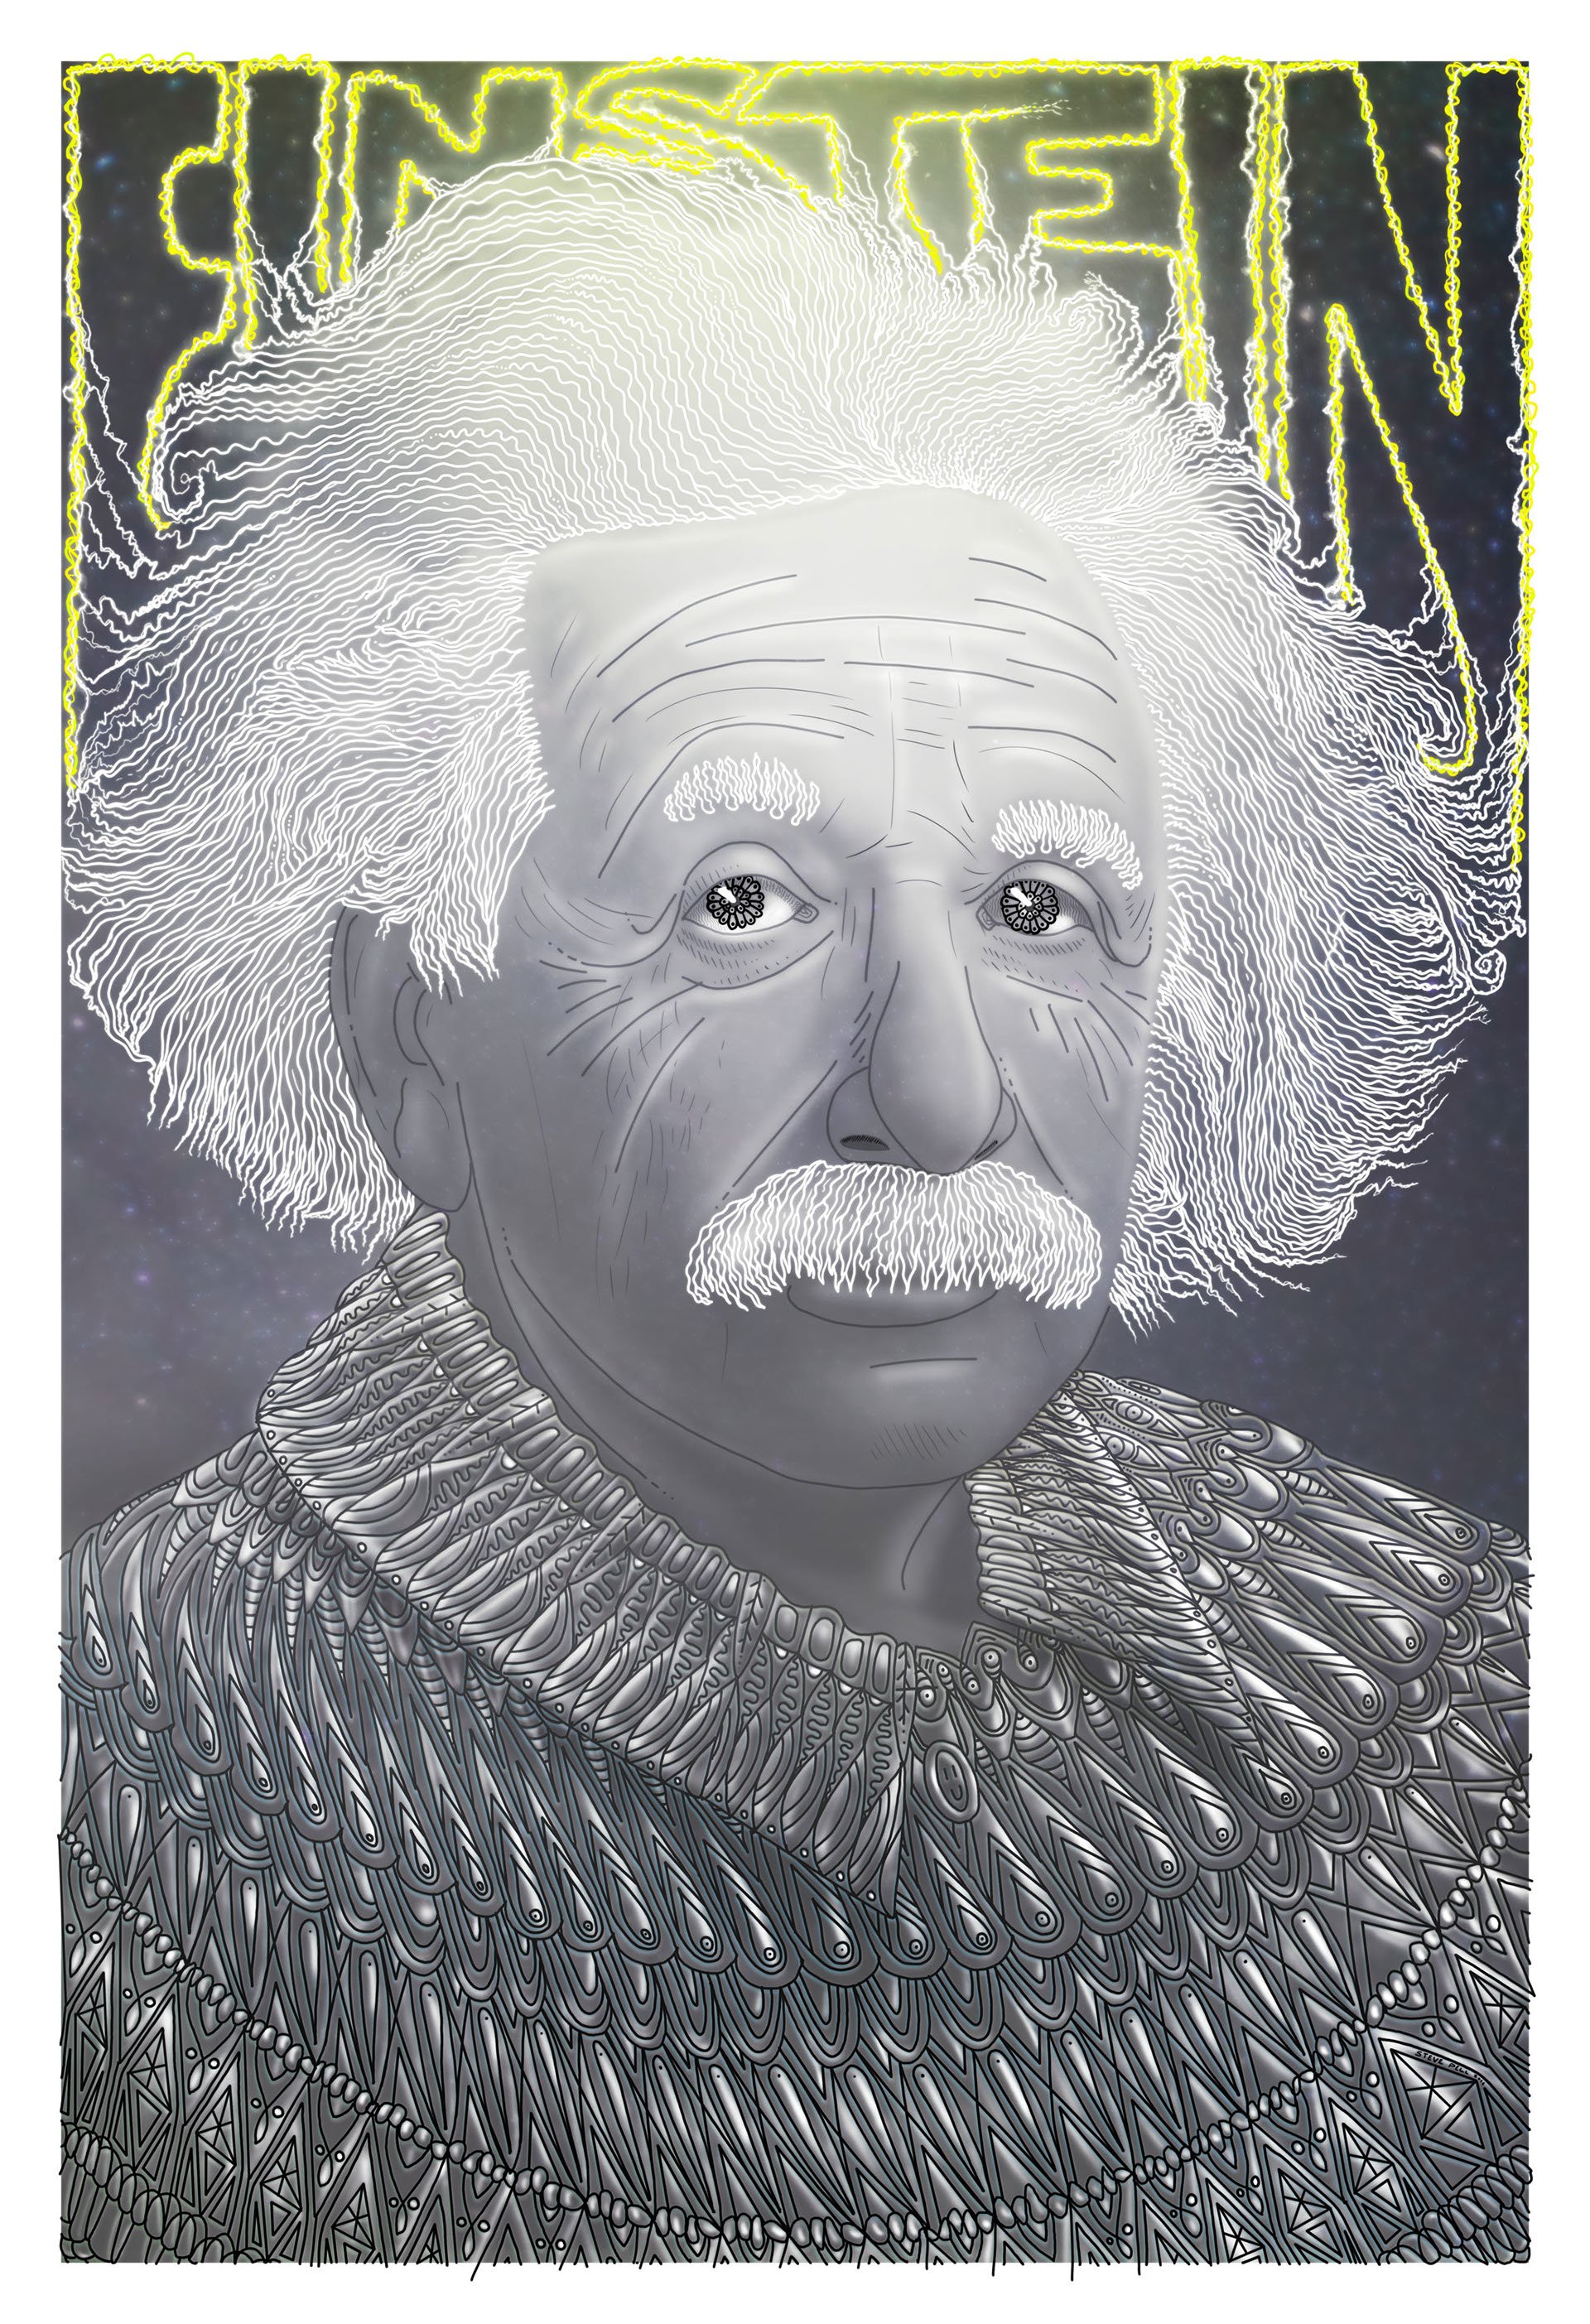 Фото Эйнштейна С Языком В Хорошем Качестве